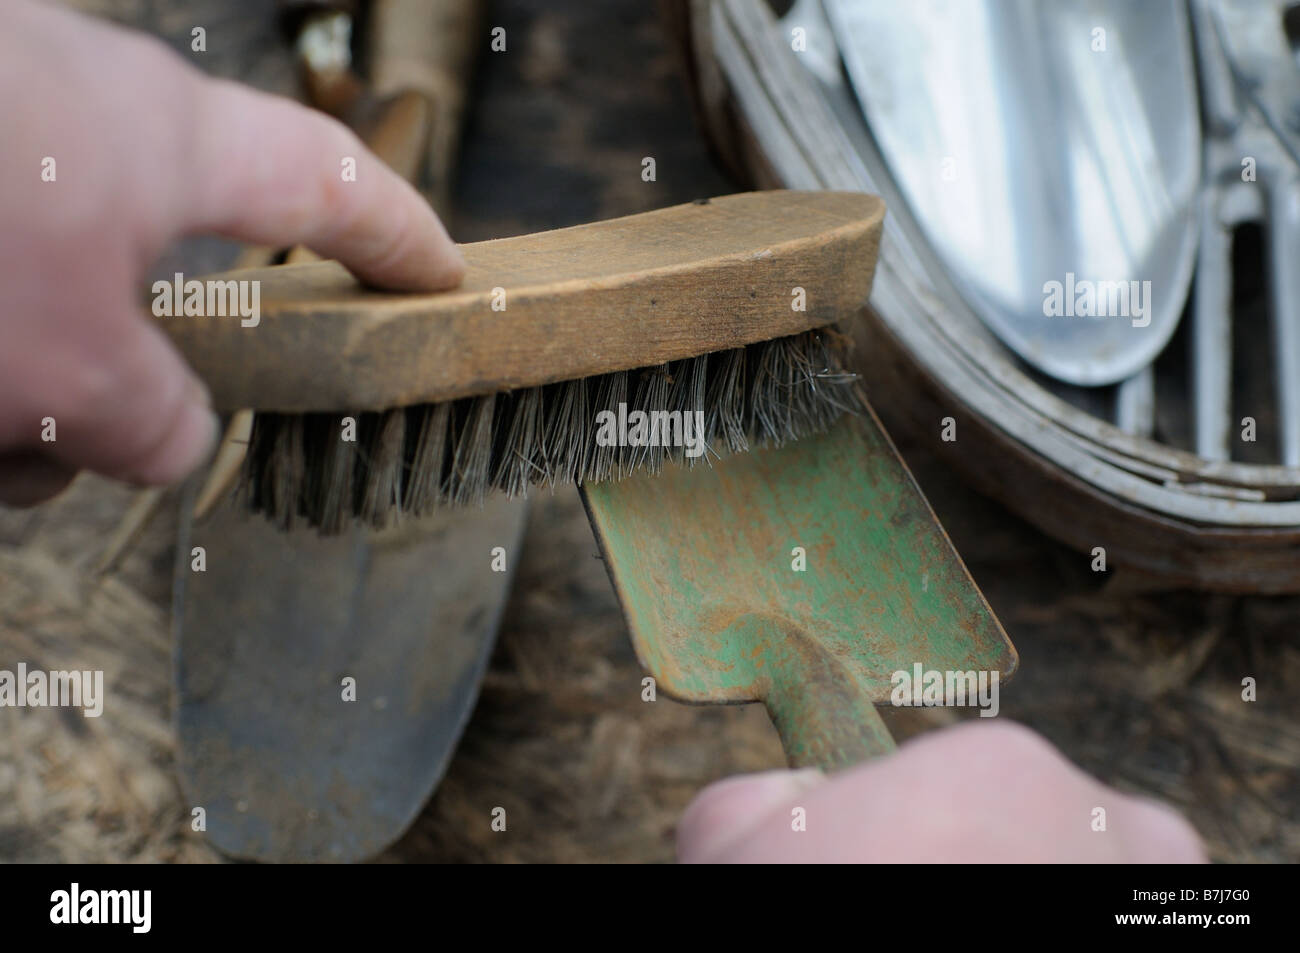 Il giardinaggio per la pulizia di utensili a mano con spazzola di filo metallico Foto Stock